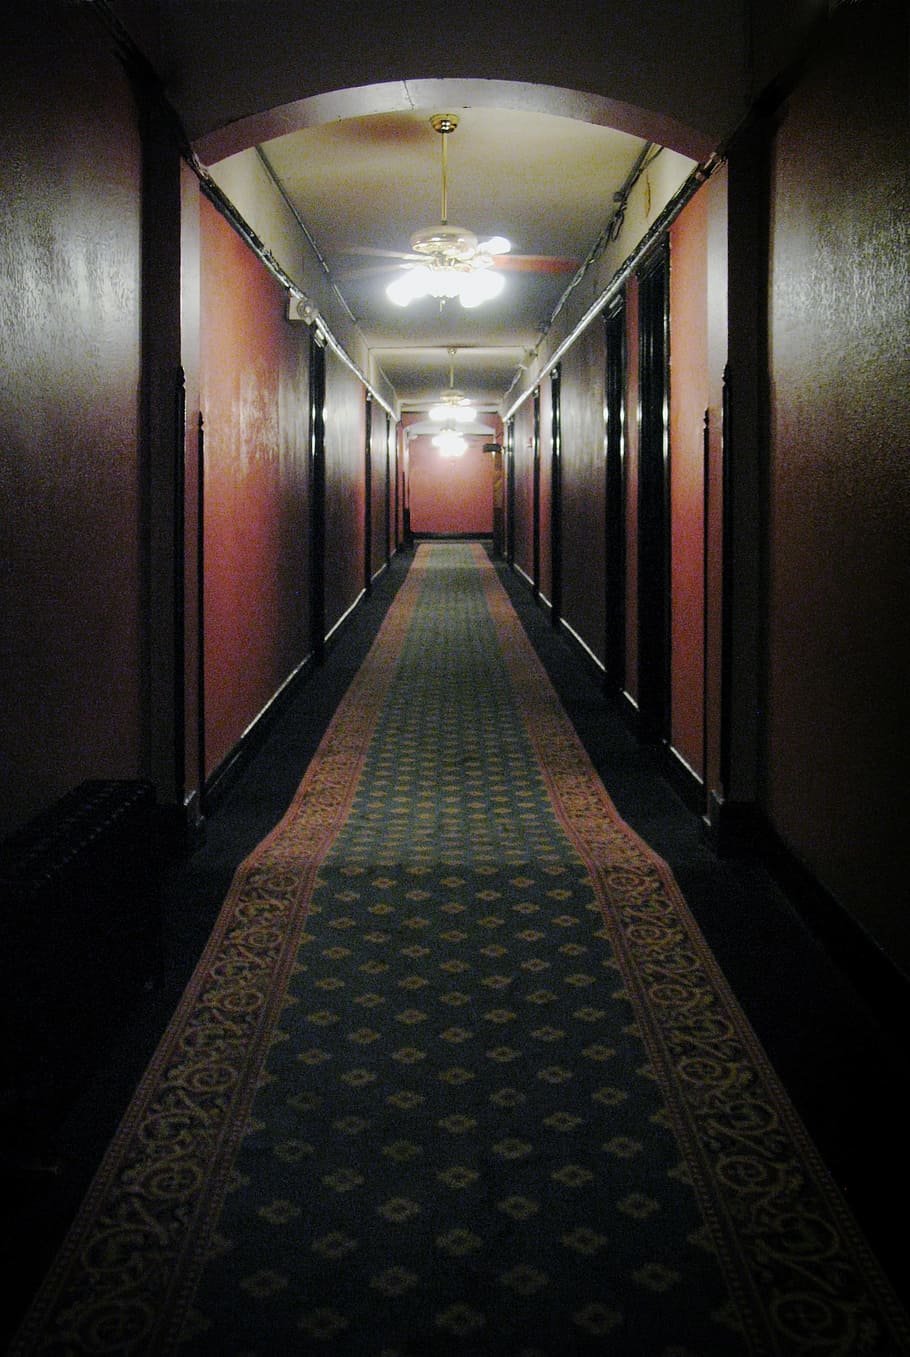 beige, green, runner rug, Hallway, Hotel, Spooky, Creepy, Haunted, ghosts, vintage